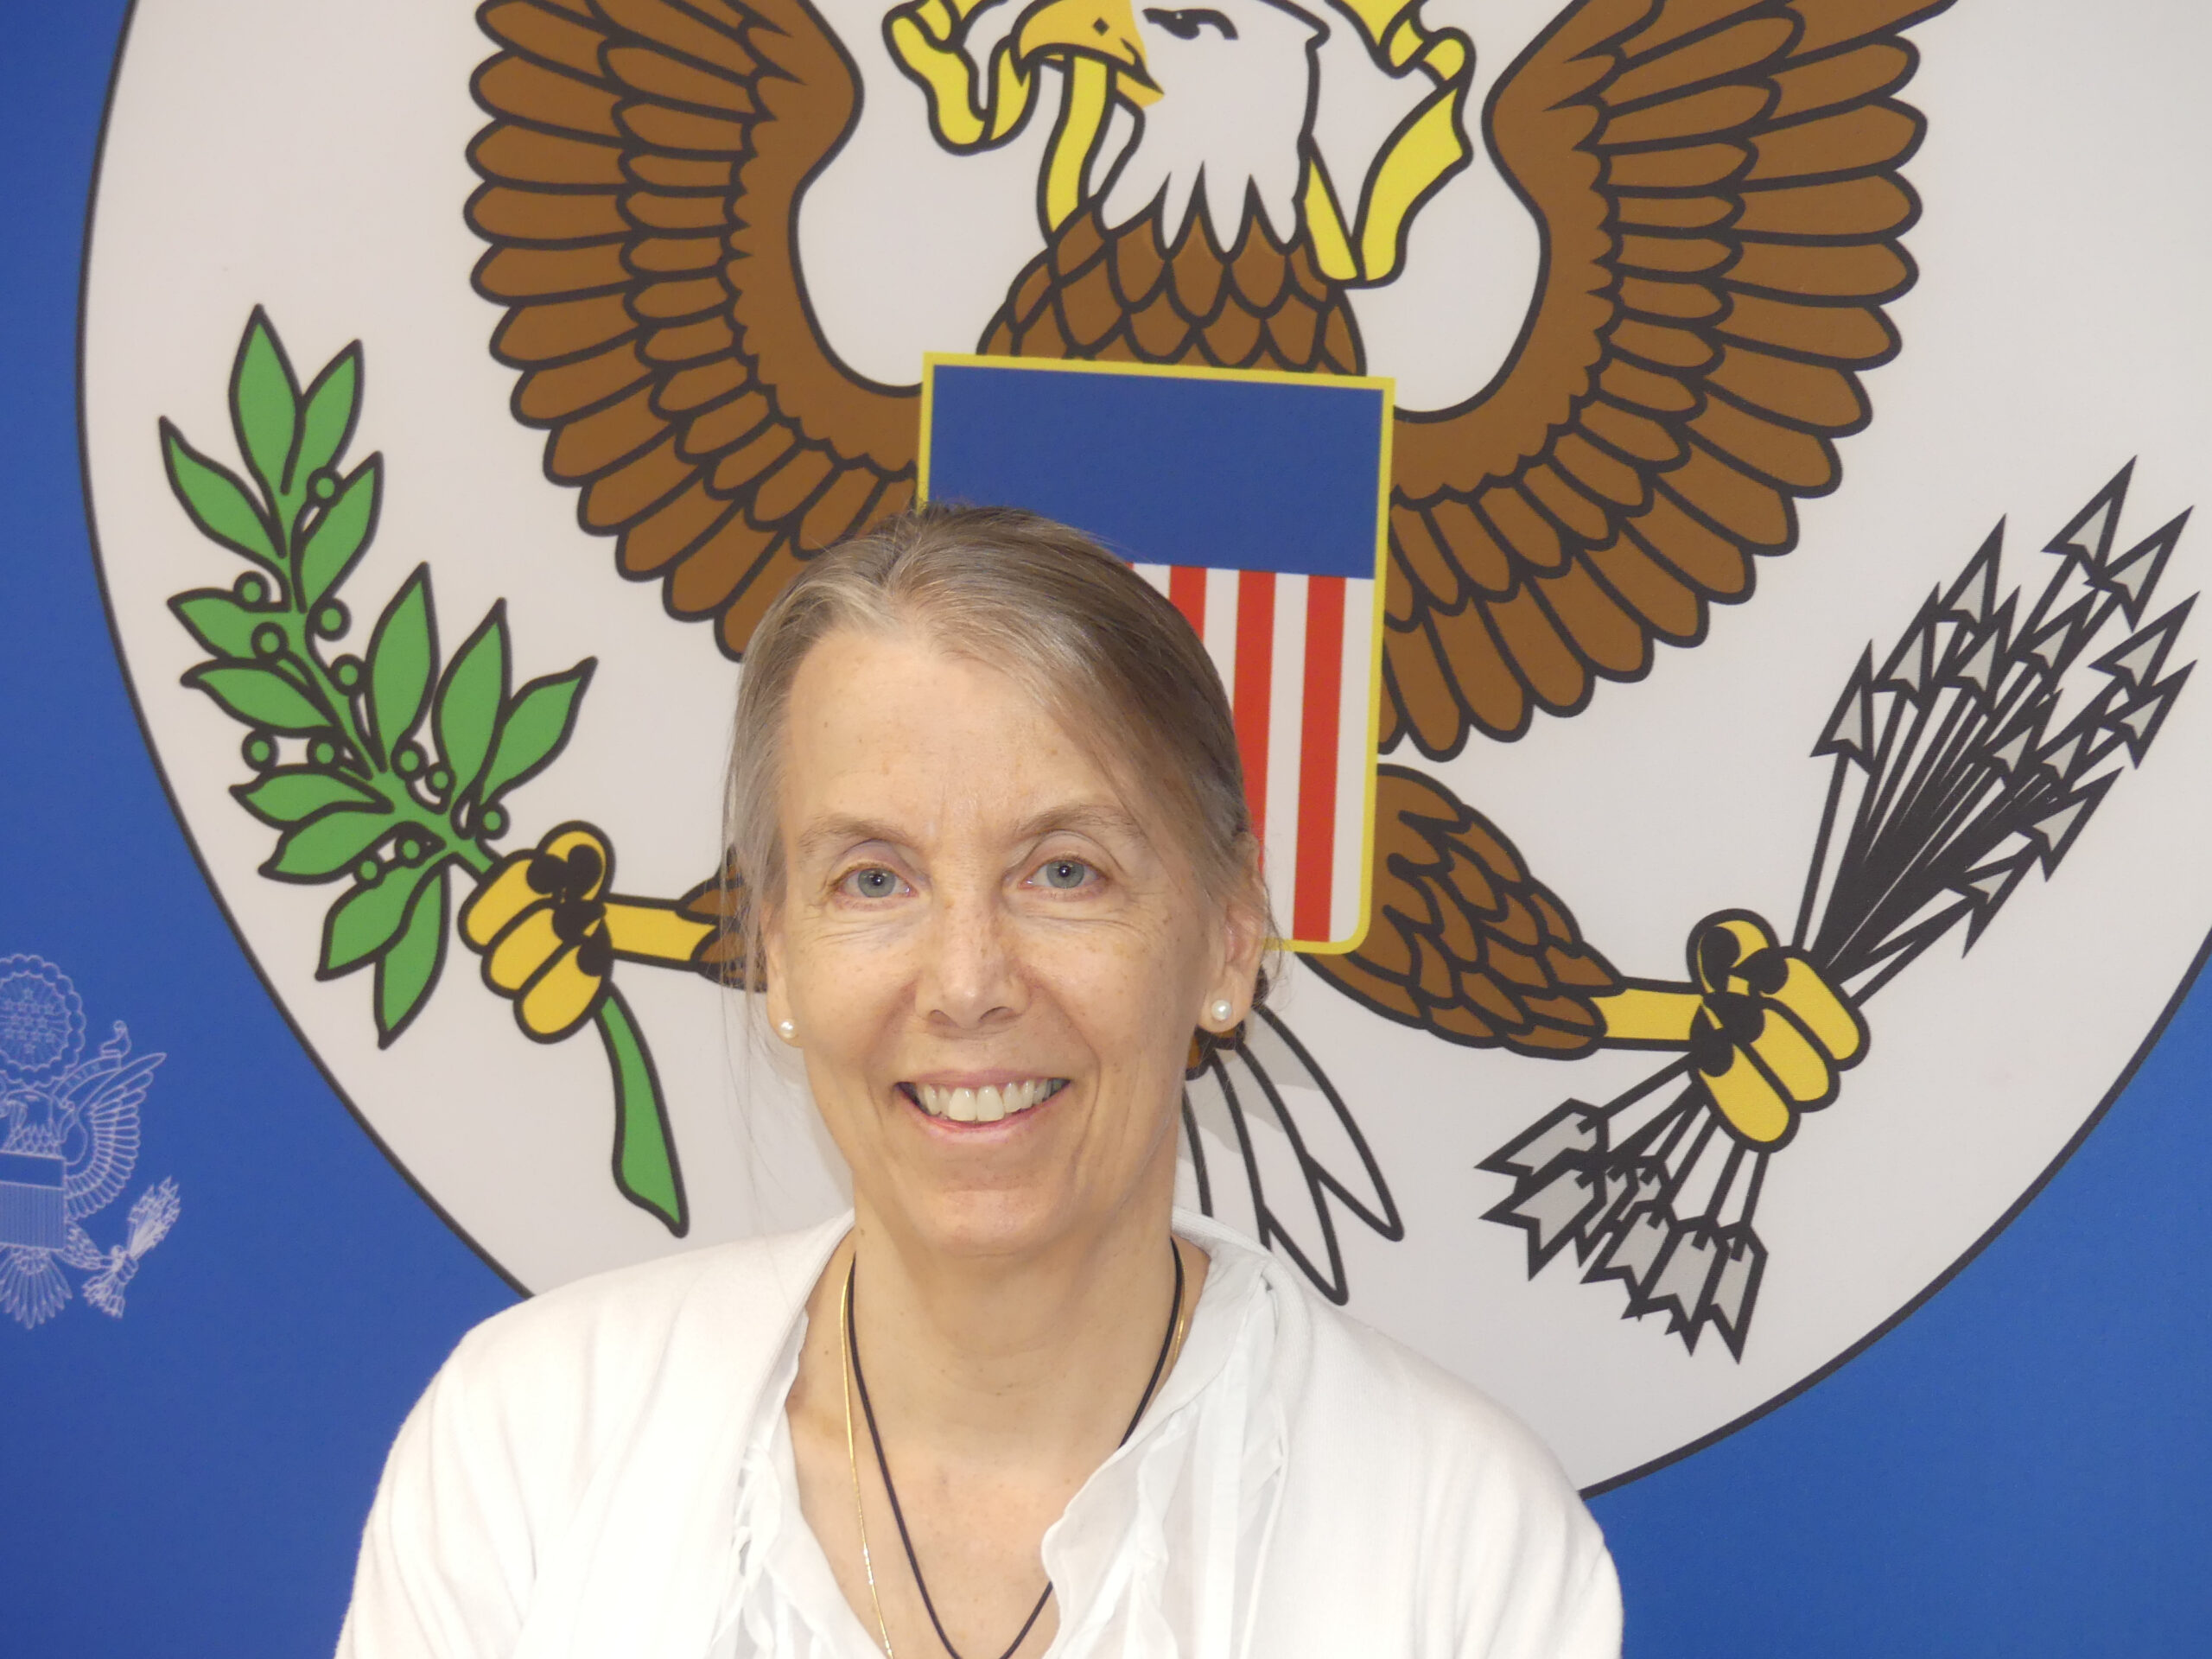 RCA-Covid-19 : La diplomate américaine Lucy Tamlyn réagit aux désinformations sur le soutien humanitaire européen